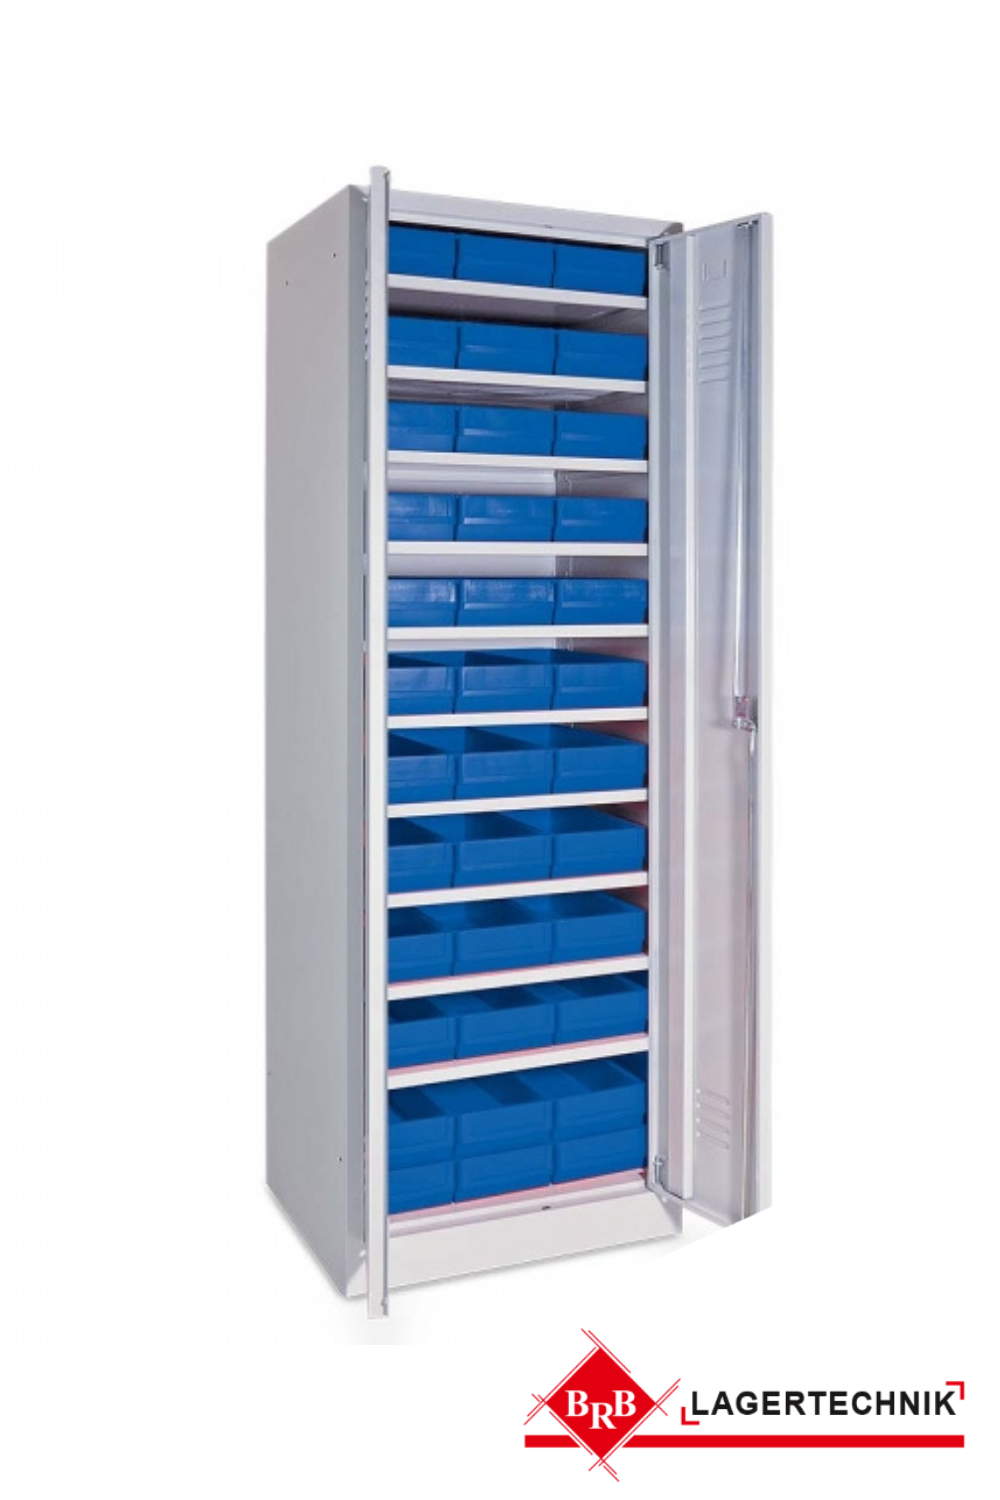 Schrank mit Regalkästen blau, LxBxH 400x183x81 mm, Türen in lichtgrau RAL 7035